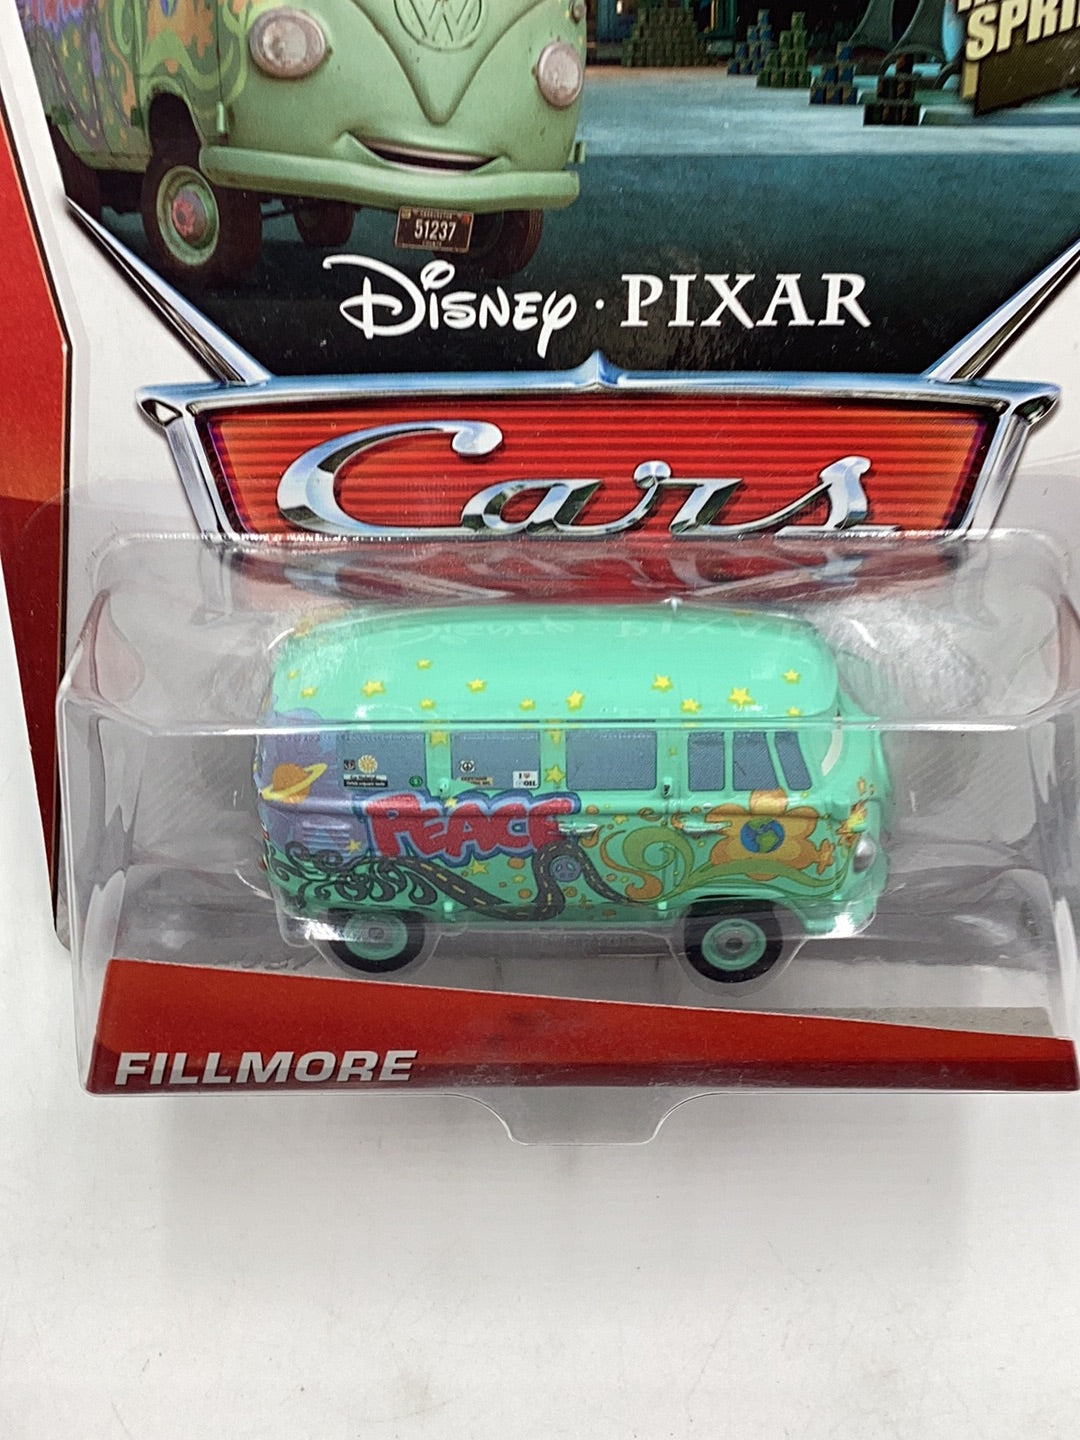 Disney Pixar Cars Radiator Springs Fillmore 141D